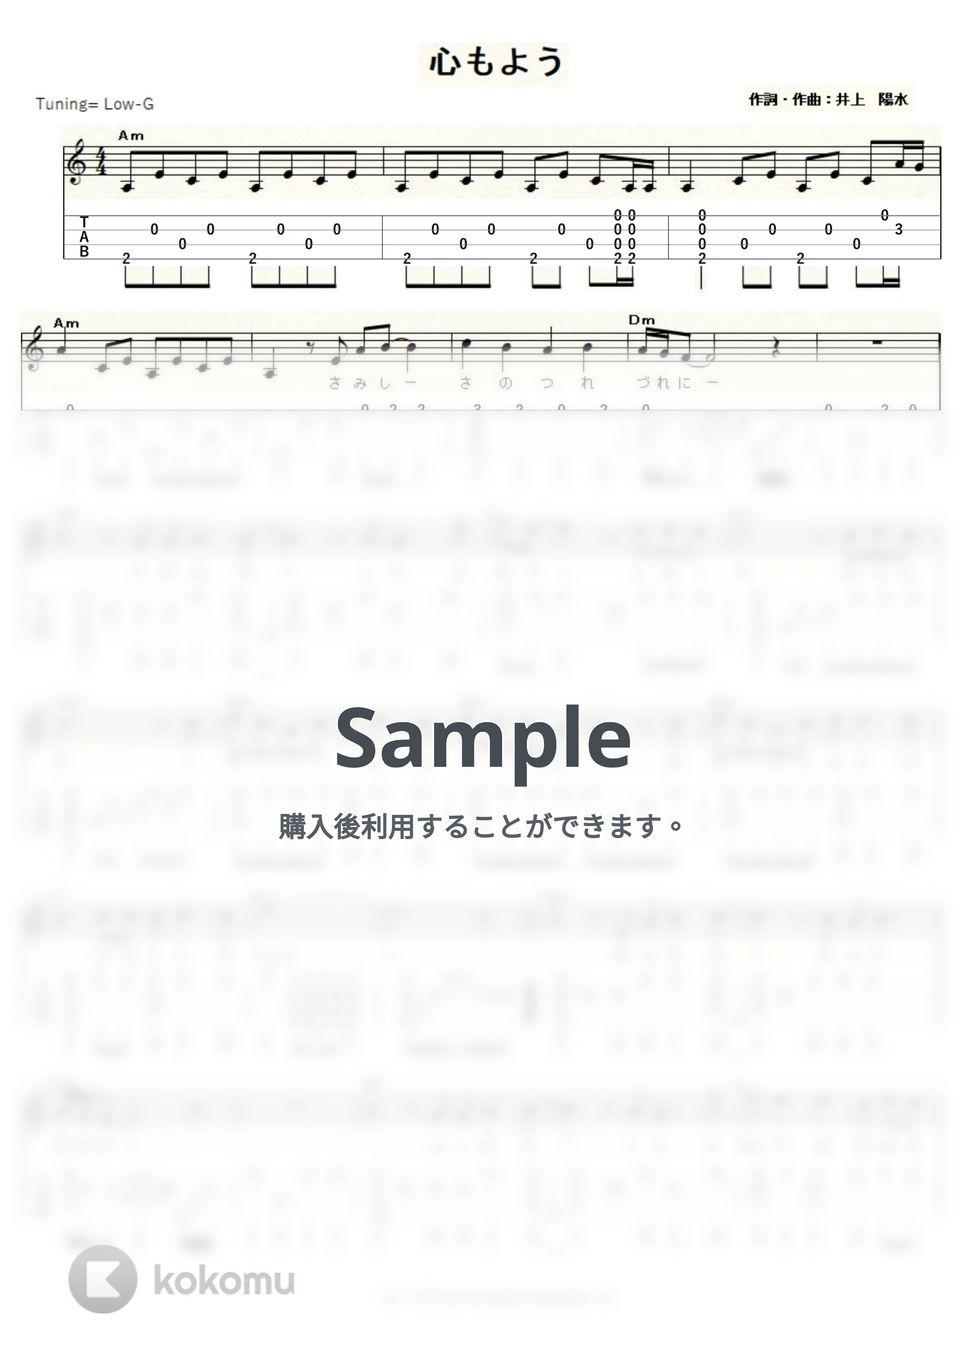 井上陽水 - 心もよう (ｳｸﾚﾚｿﾛ / Low-G / 中級) by ukulelepapa